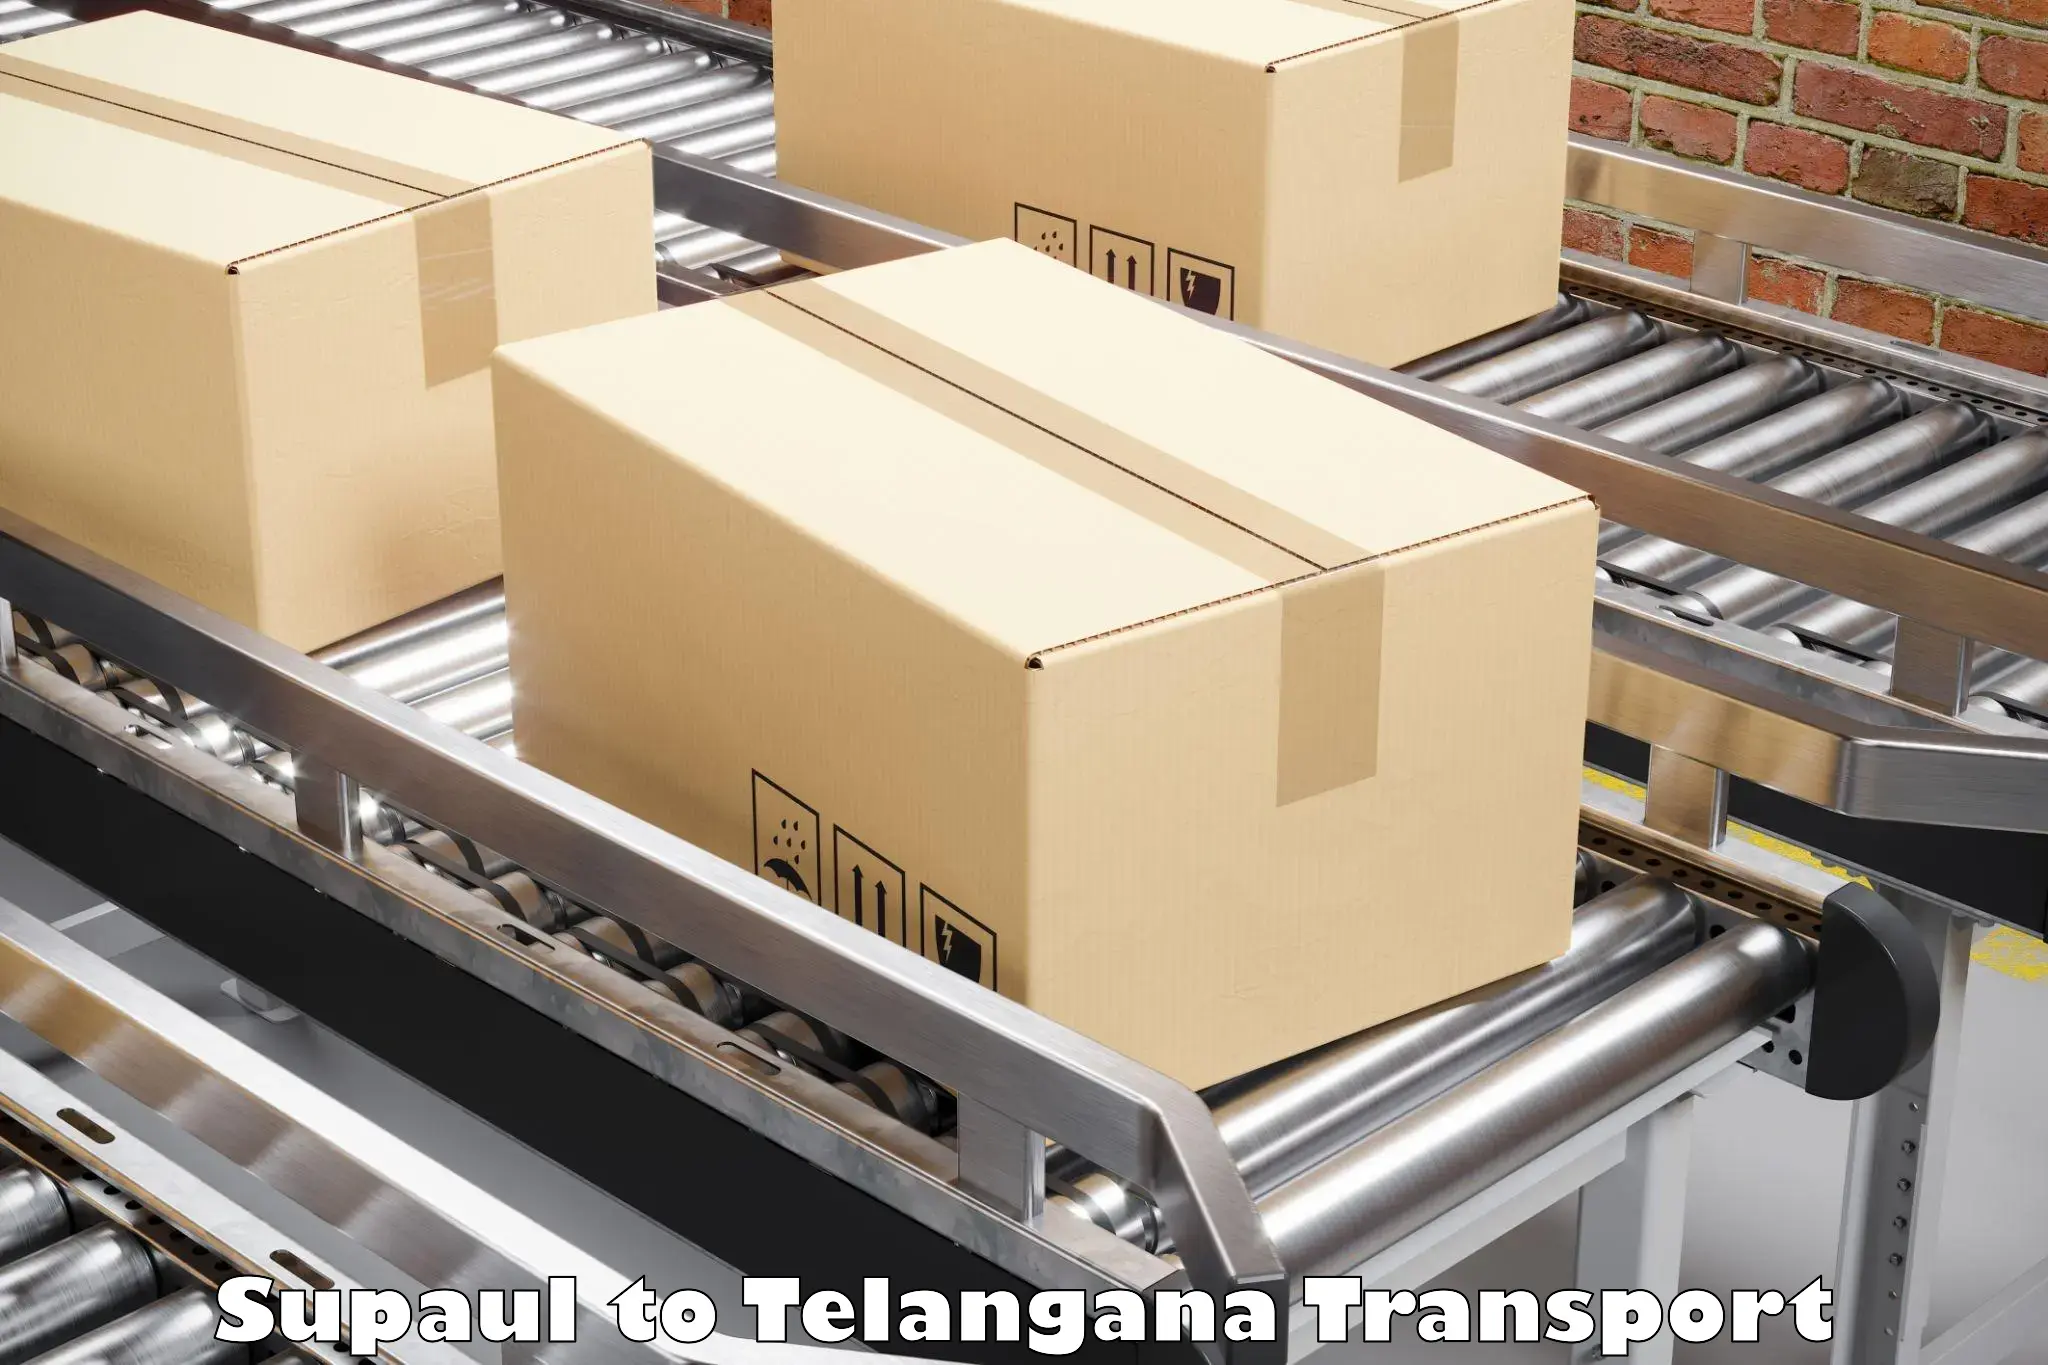 Lorry transport service Supaul to Balanagar